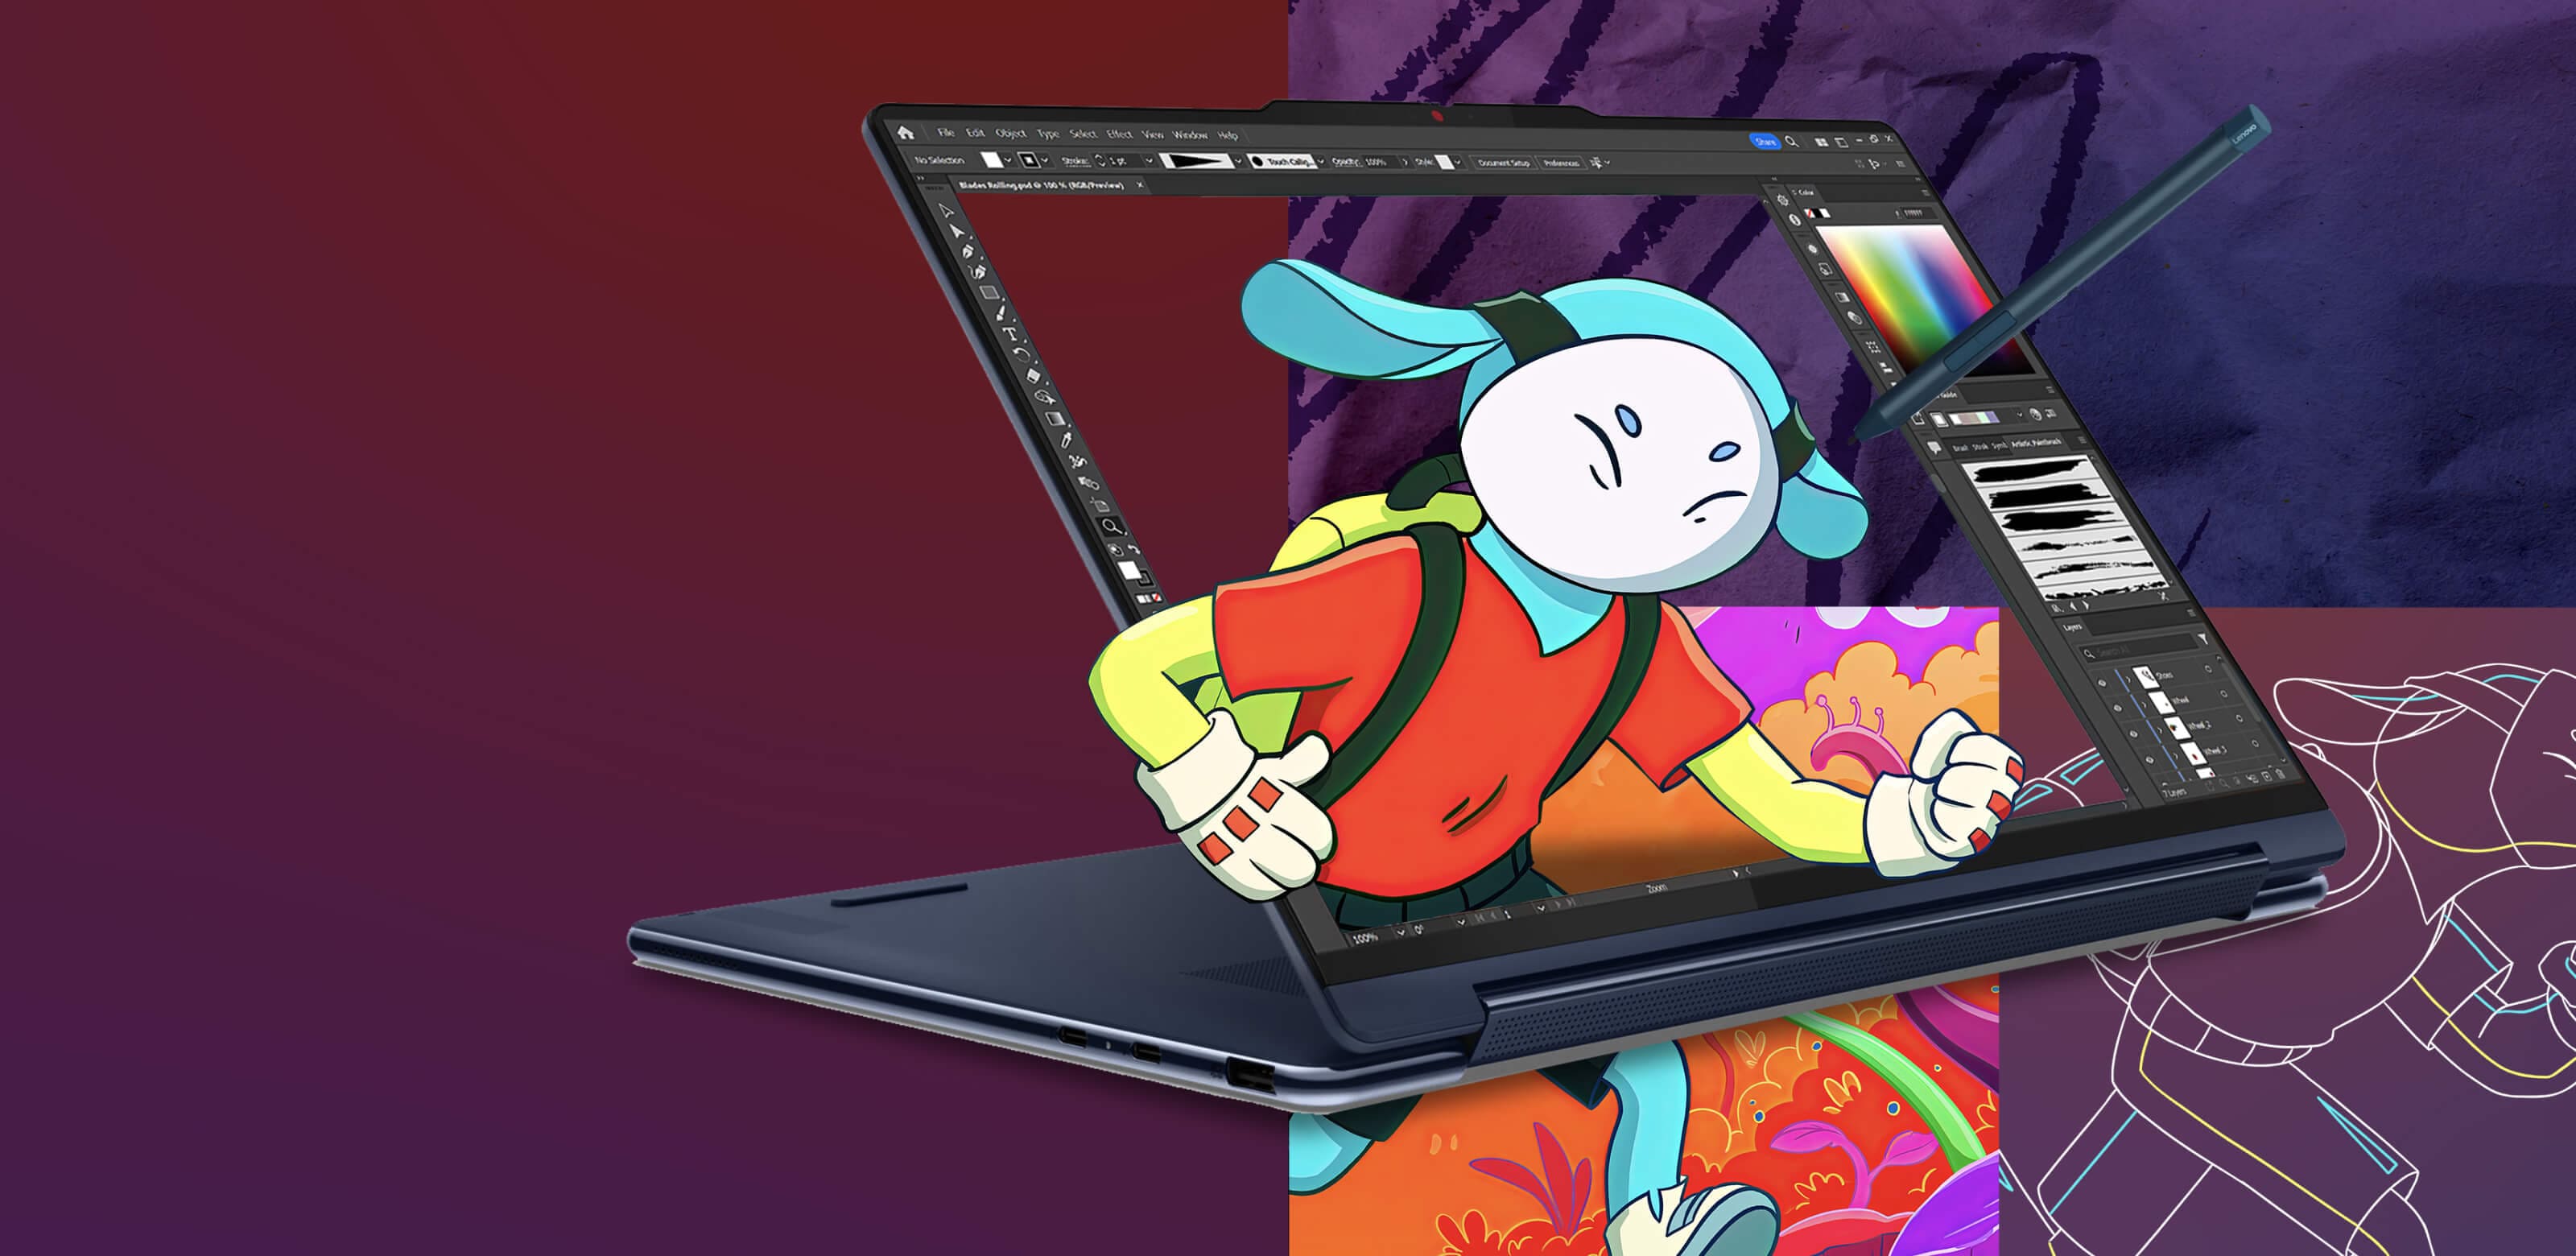 Ordinateur portable Lenovo Yoga en mode support, affichant un programme d’édition d’image avec un personnage animé sortant de l’écran.